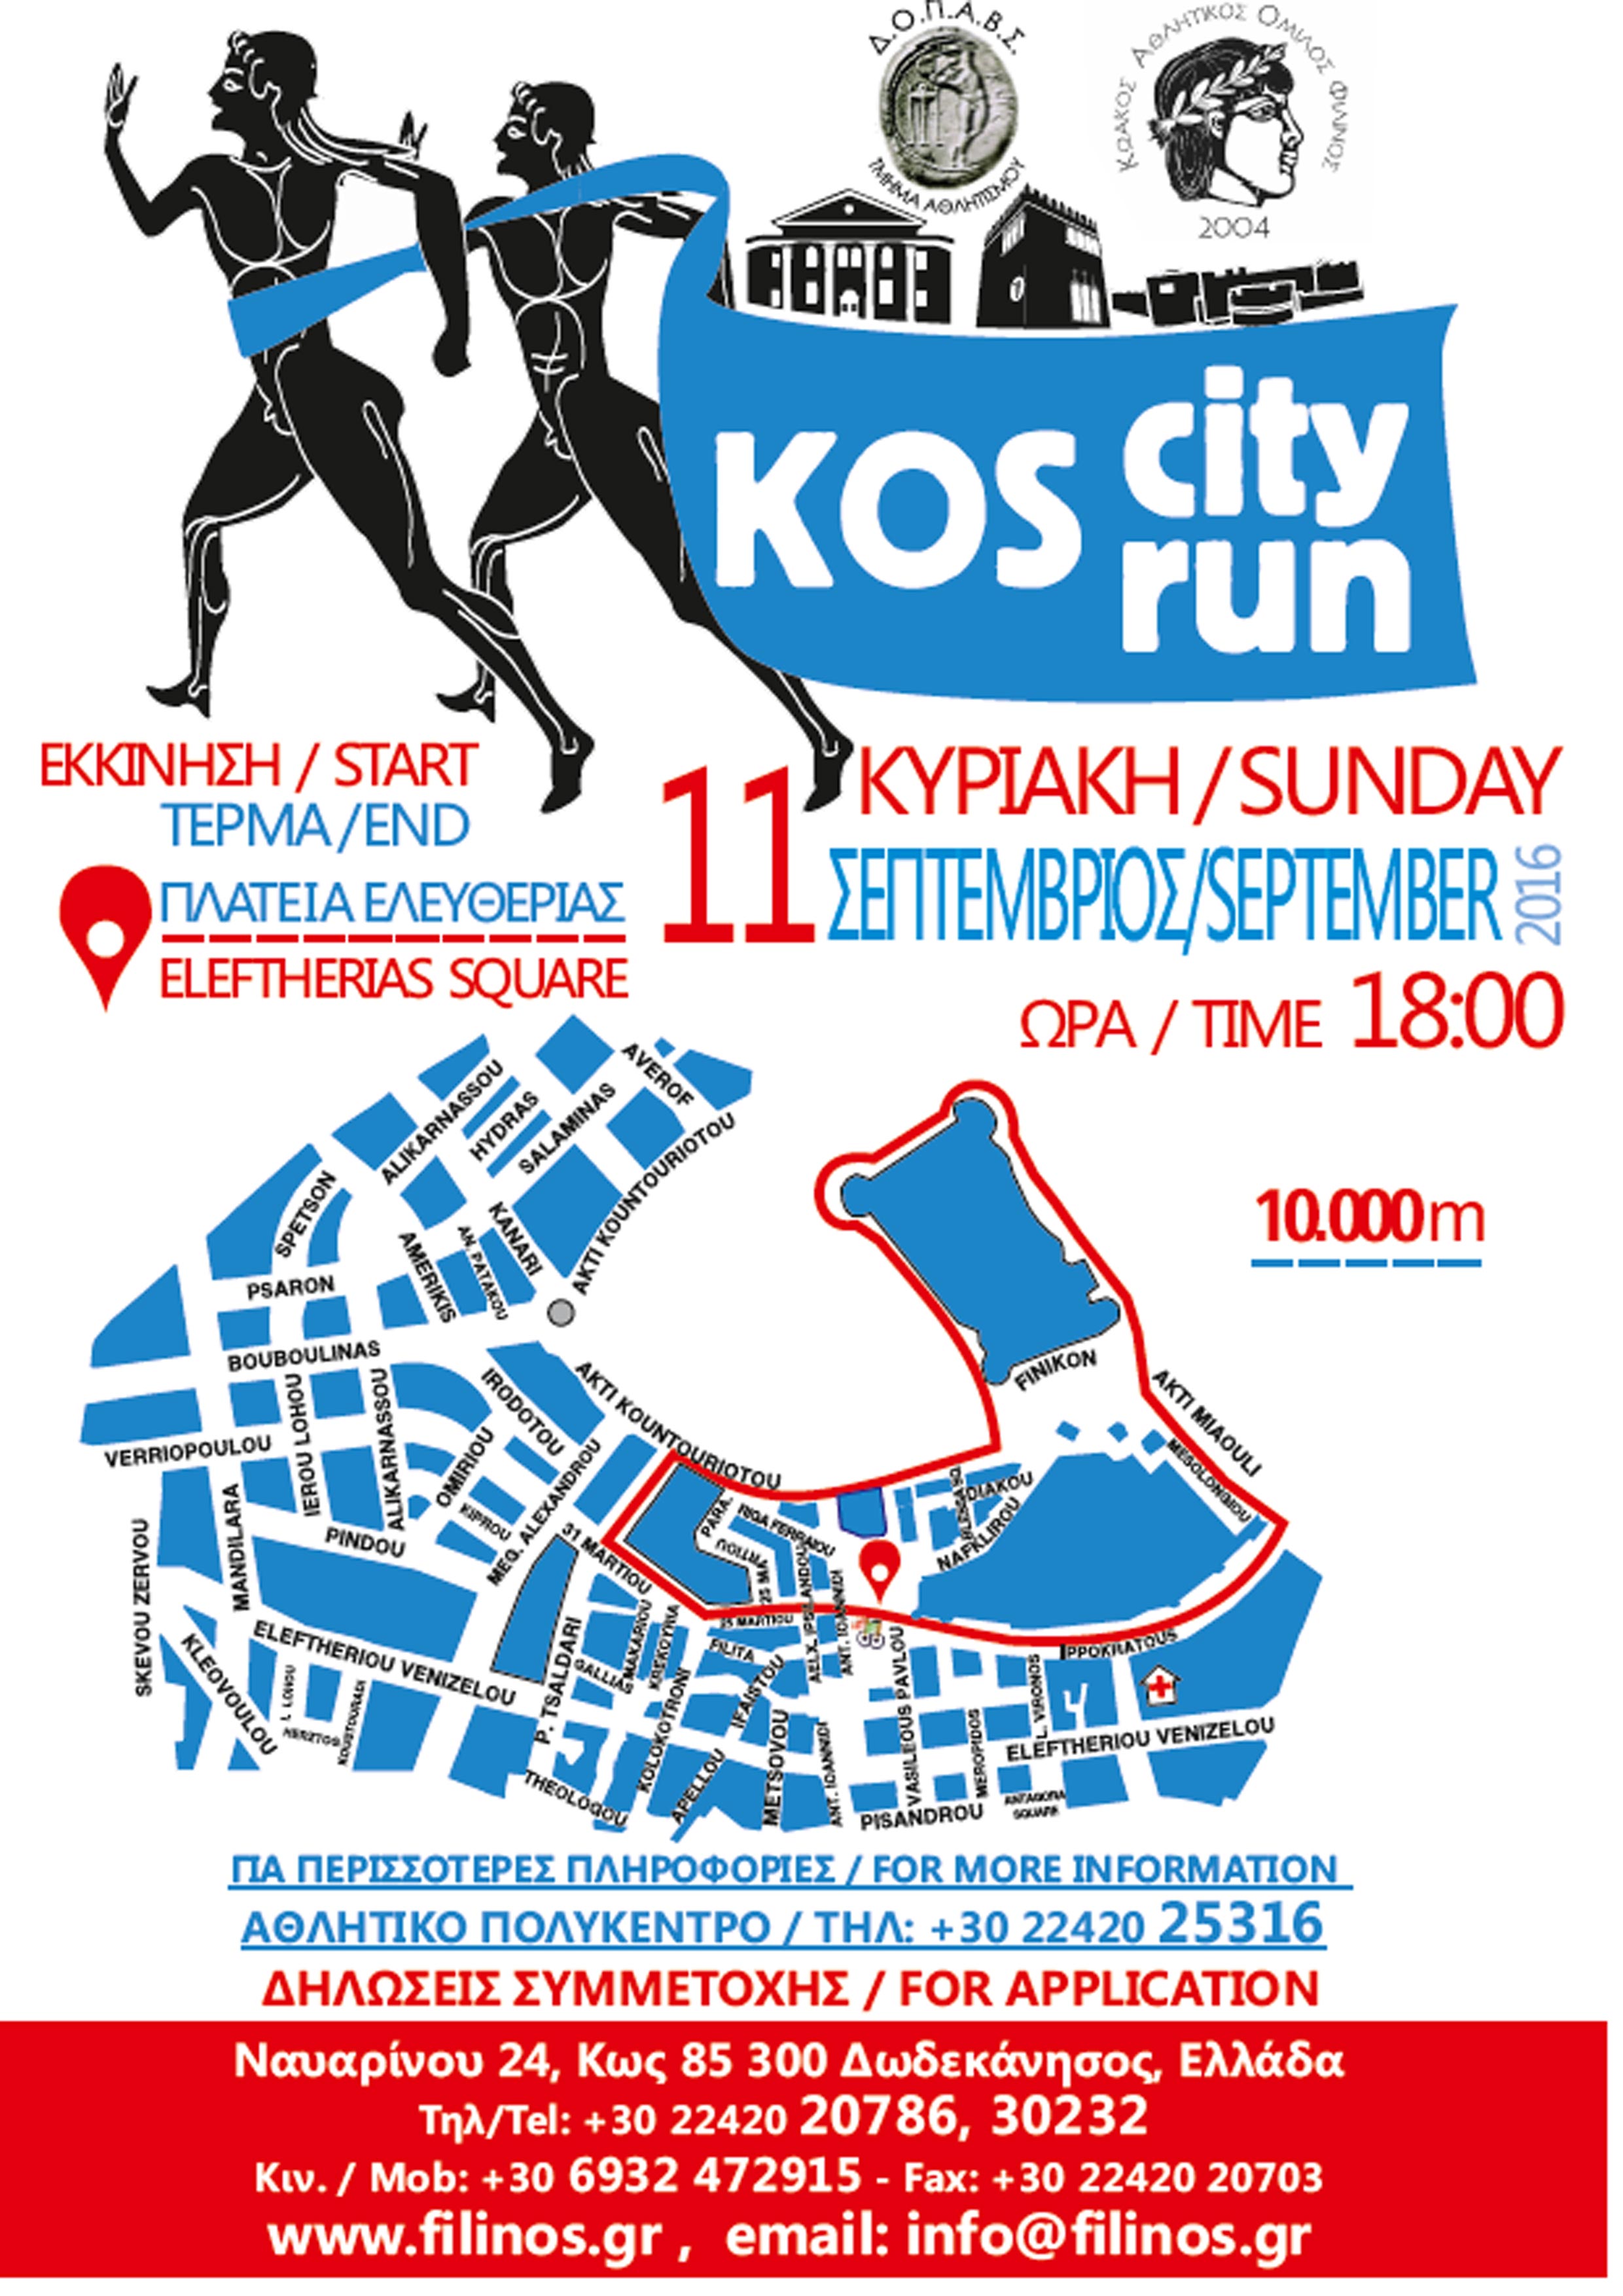 kos-city-run-2016